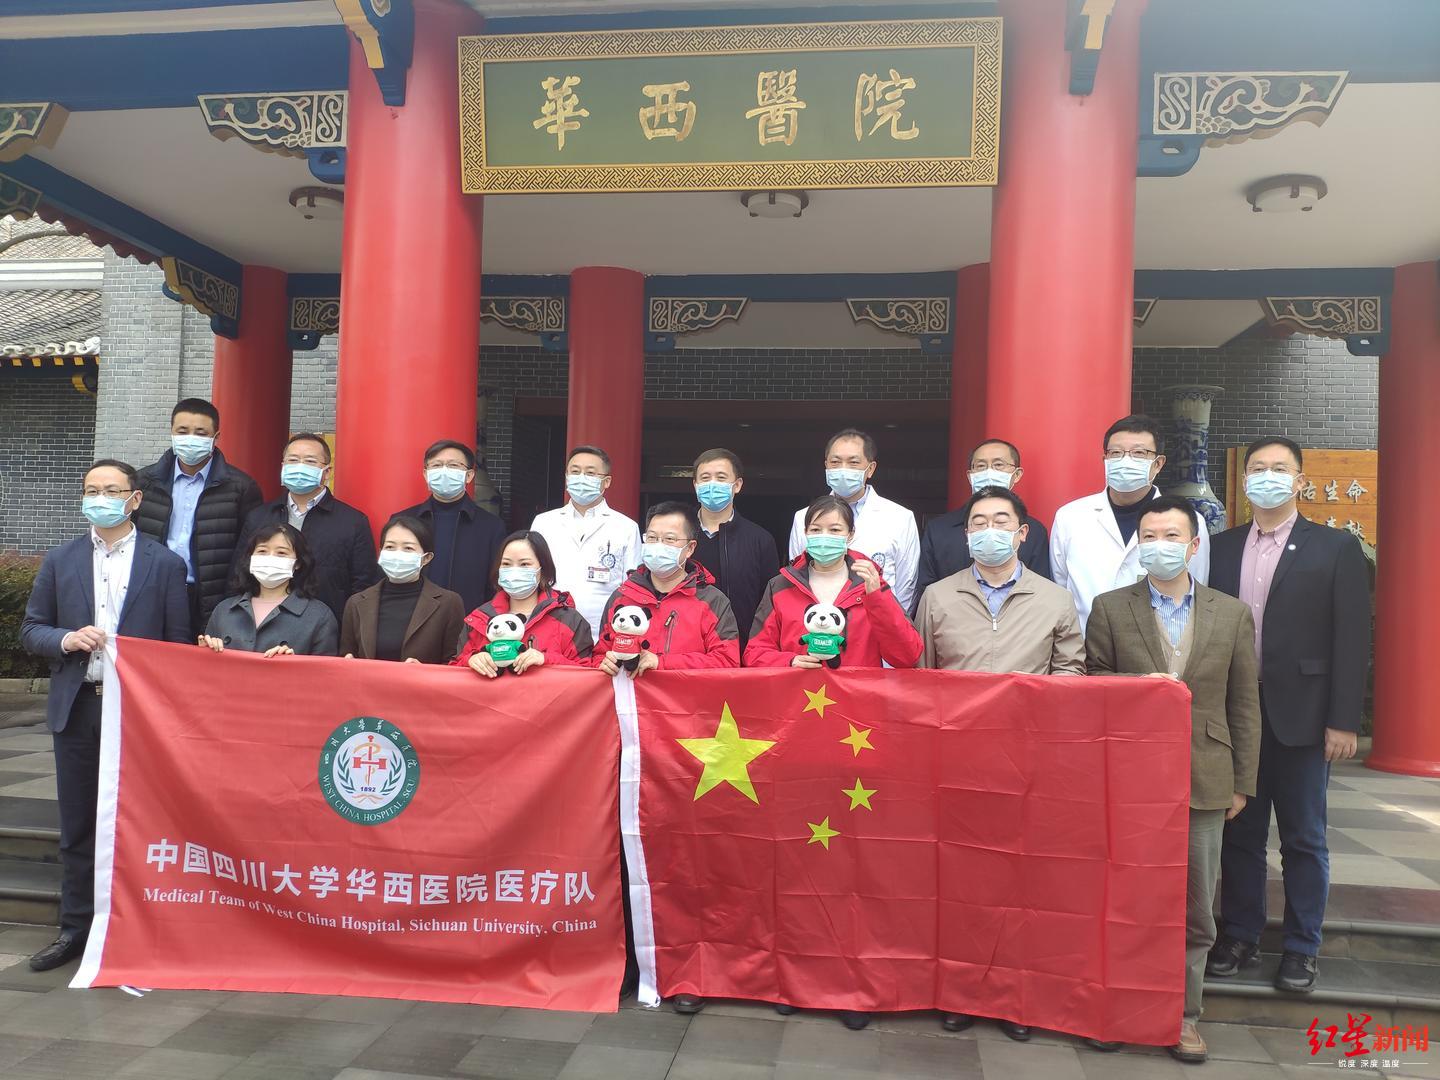 中国抗疫专家组赴意大利 支援抗击新冠肺炎疫情